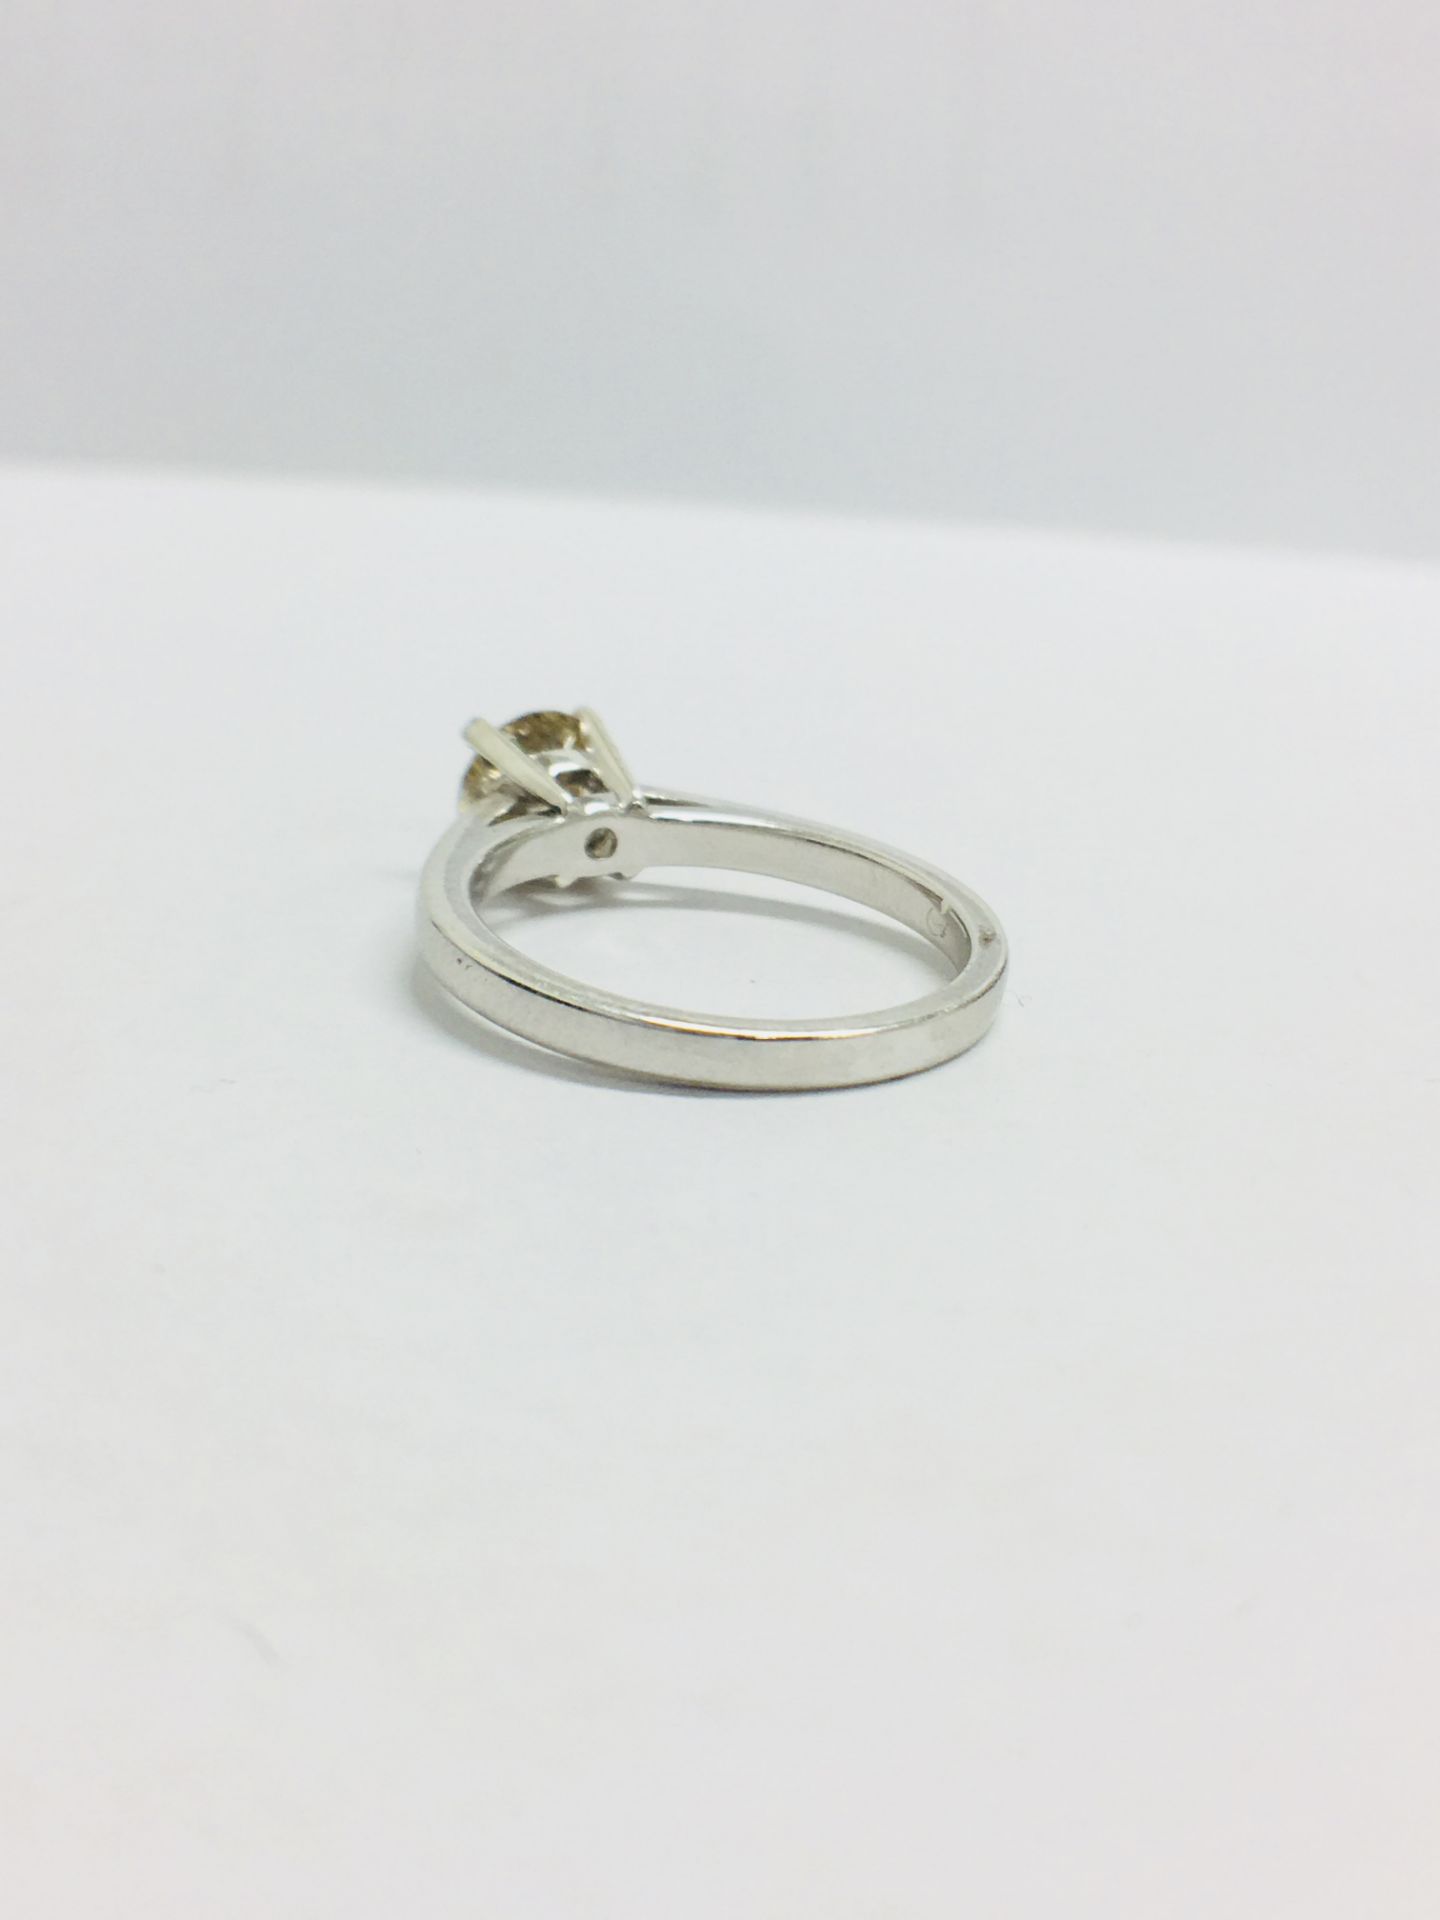 1.00Ct Diamond Solitaire Ring Set In Platinum. - Image 3 of 8